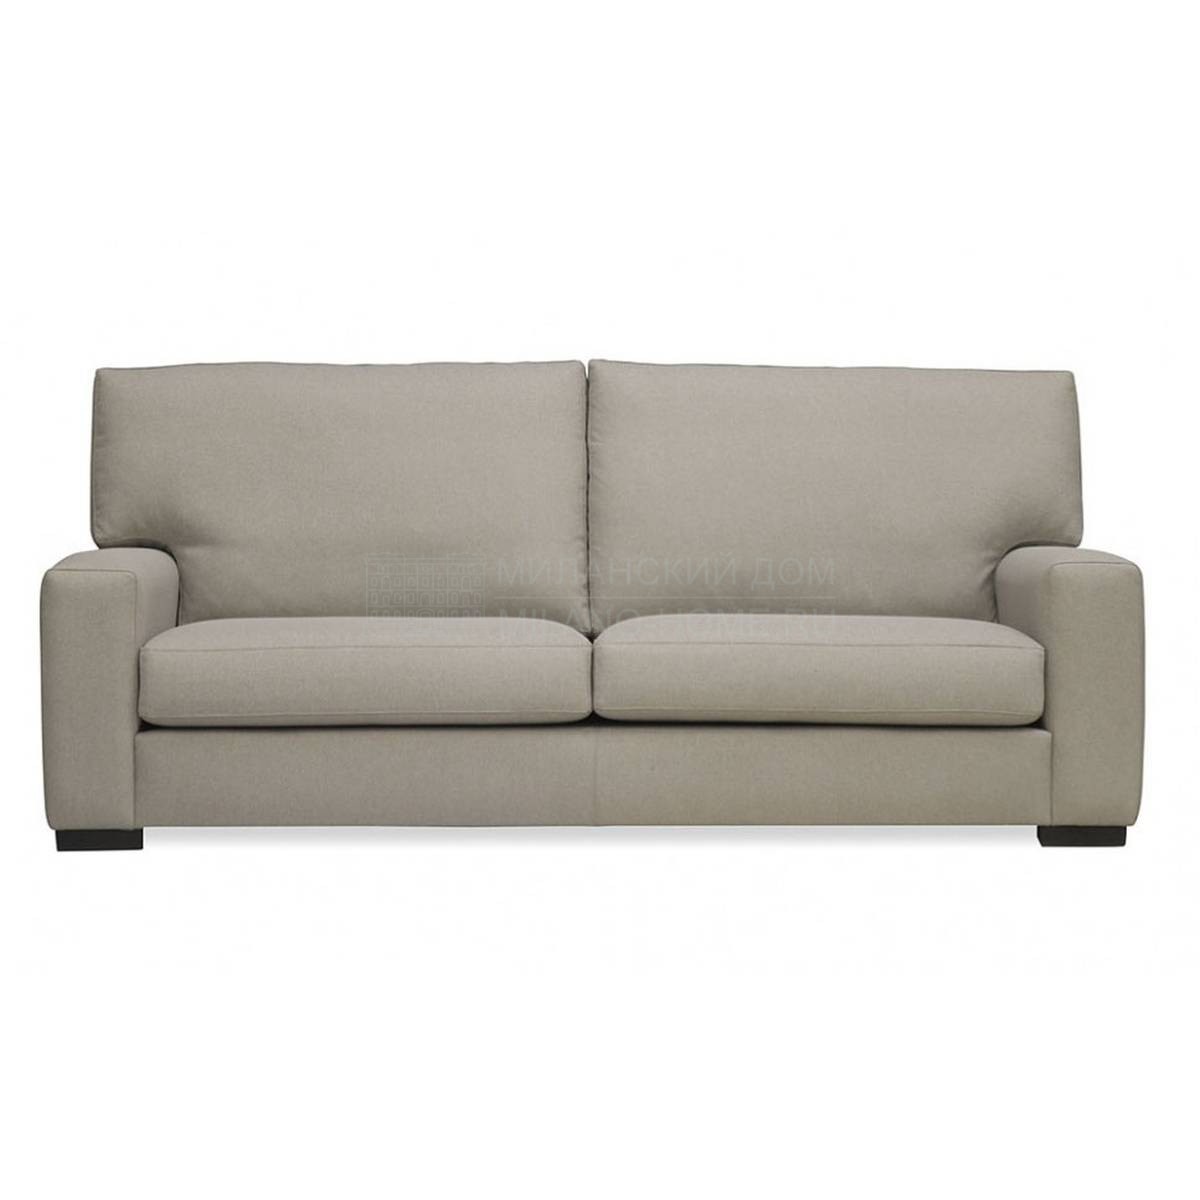 Прямой диван Torino/sofa из Испании фабрики MANUEL LARRAGA